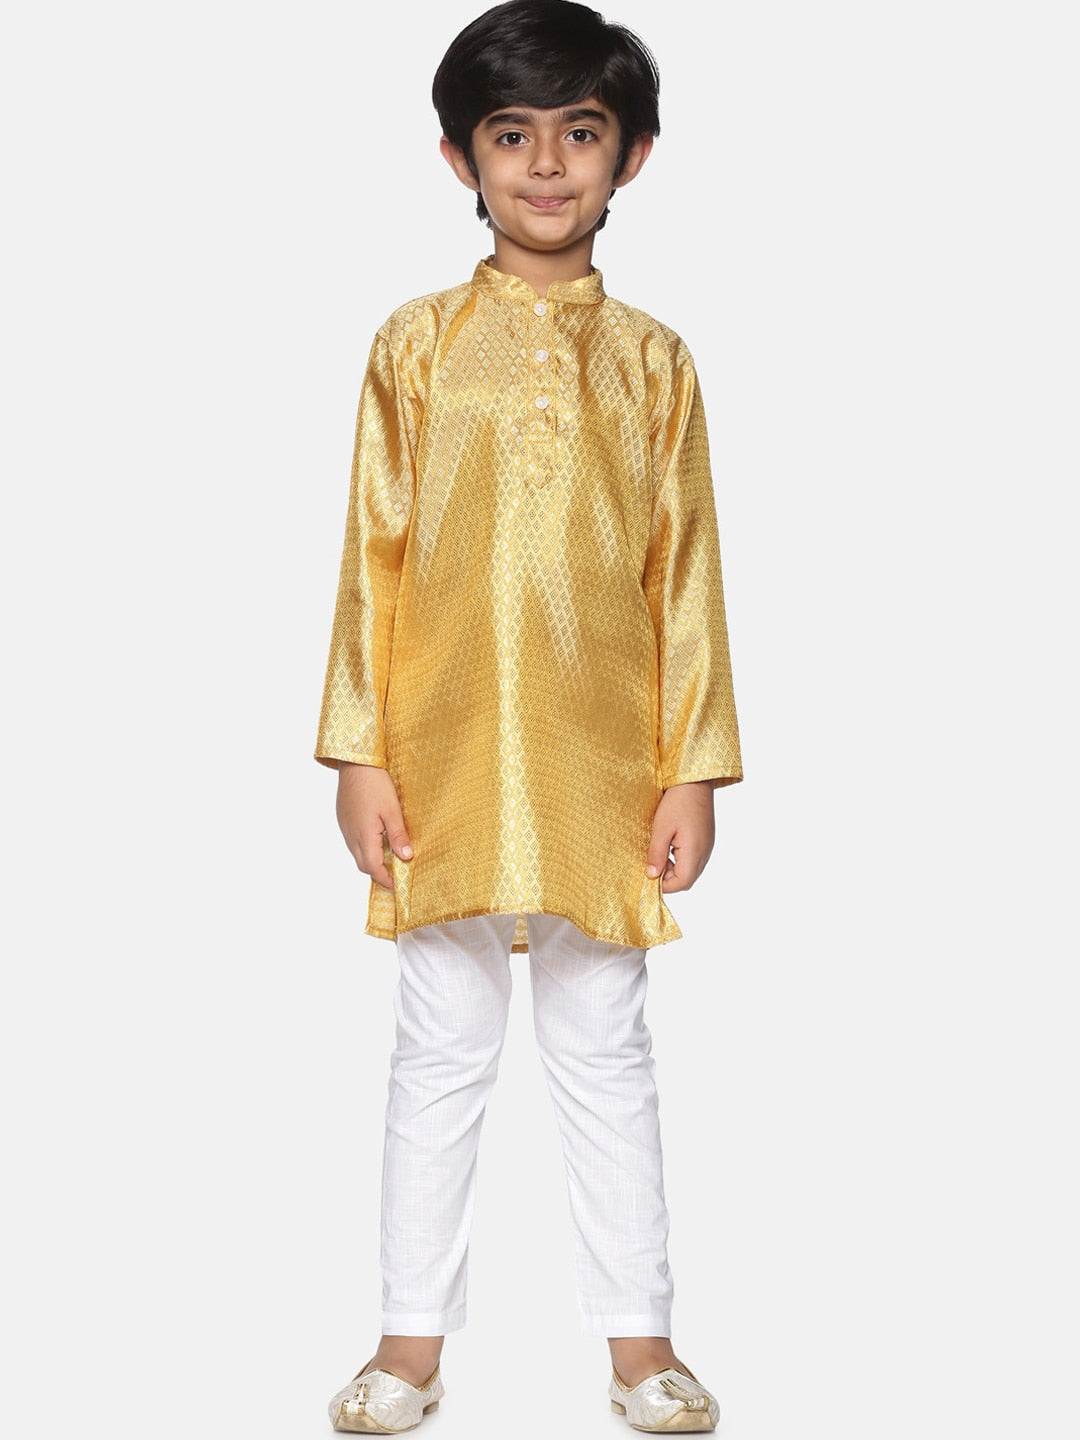 Sethukrishna Boys Gold-Coloured & White Kurta with Pyjamas - Distacart